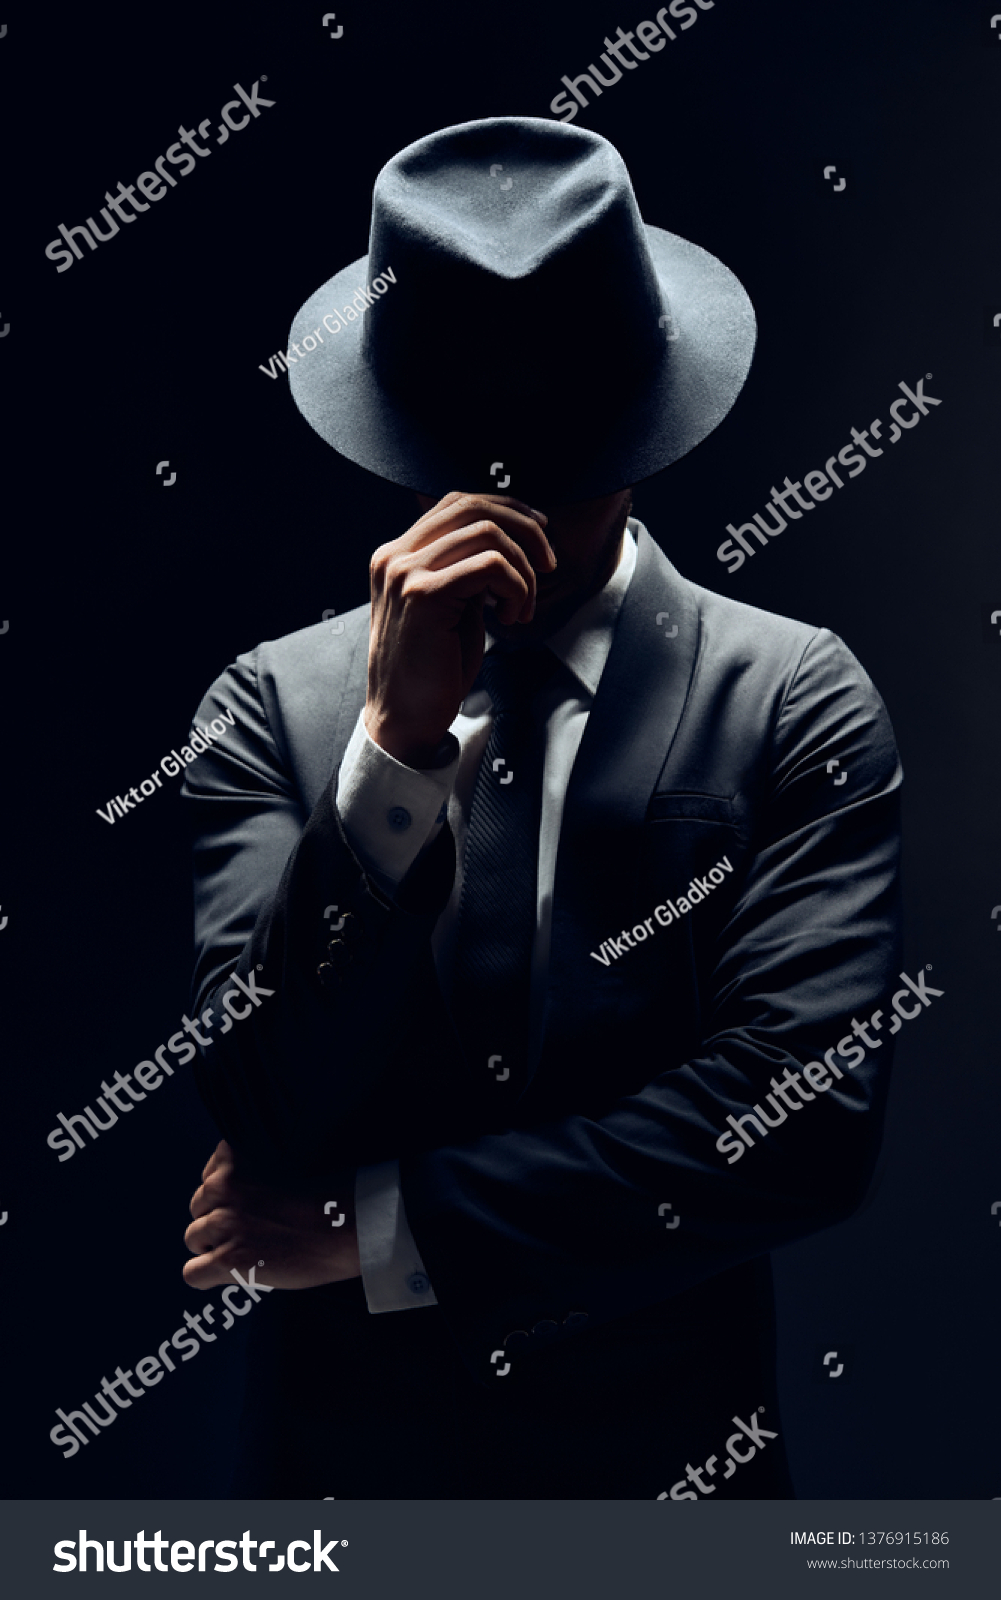 暗い背景にスーツを着た男性が帽子の後ろに顔を隠す 秘密の秘密のコンセプト の写真素材 今すぐ編集